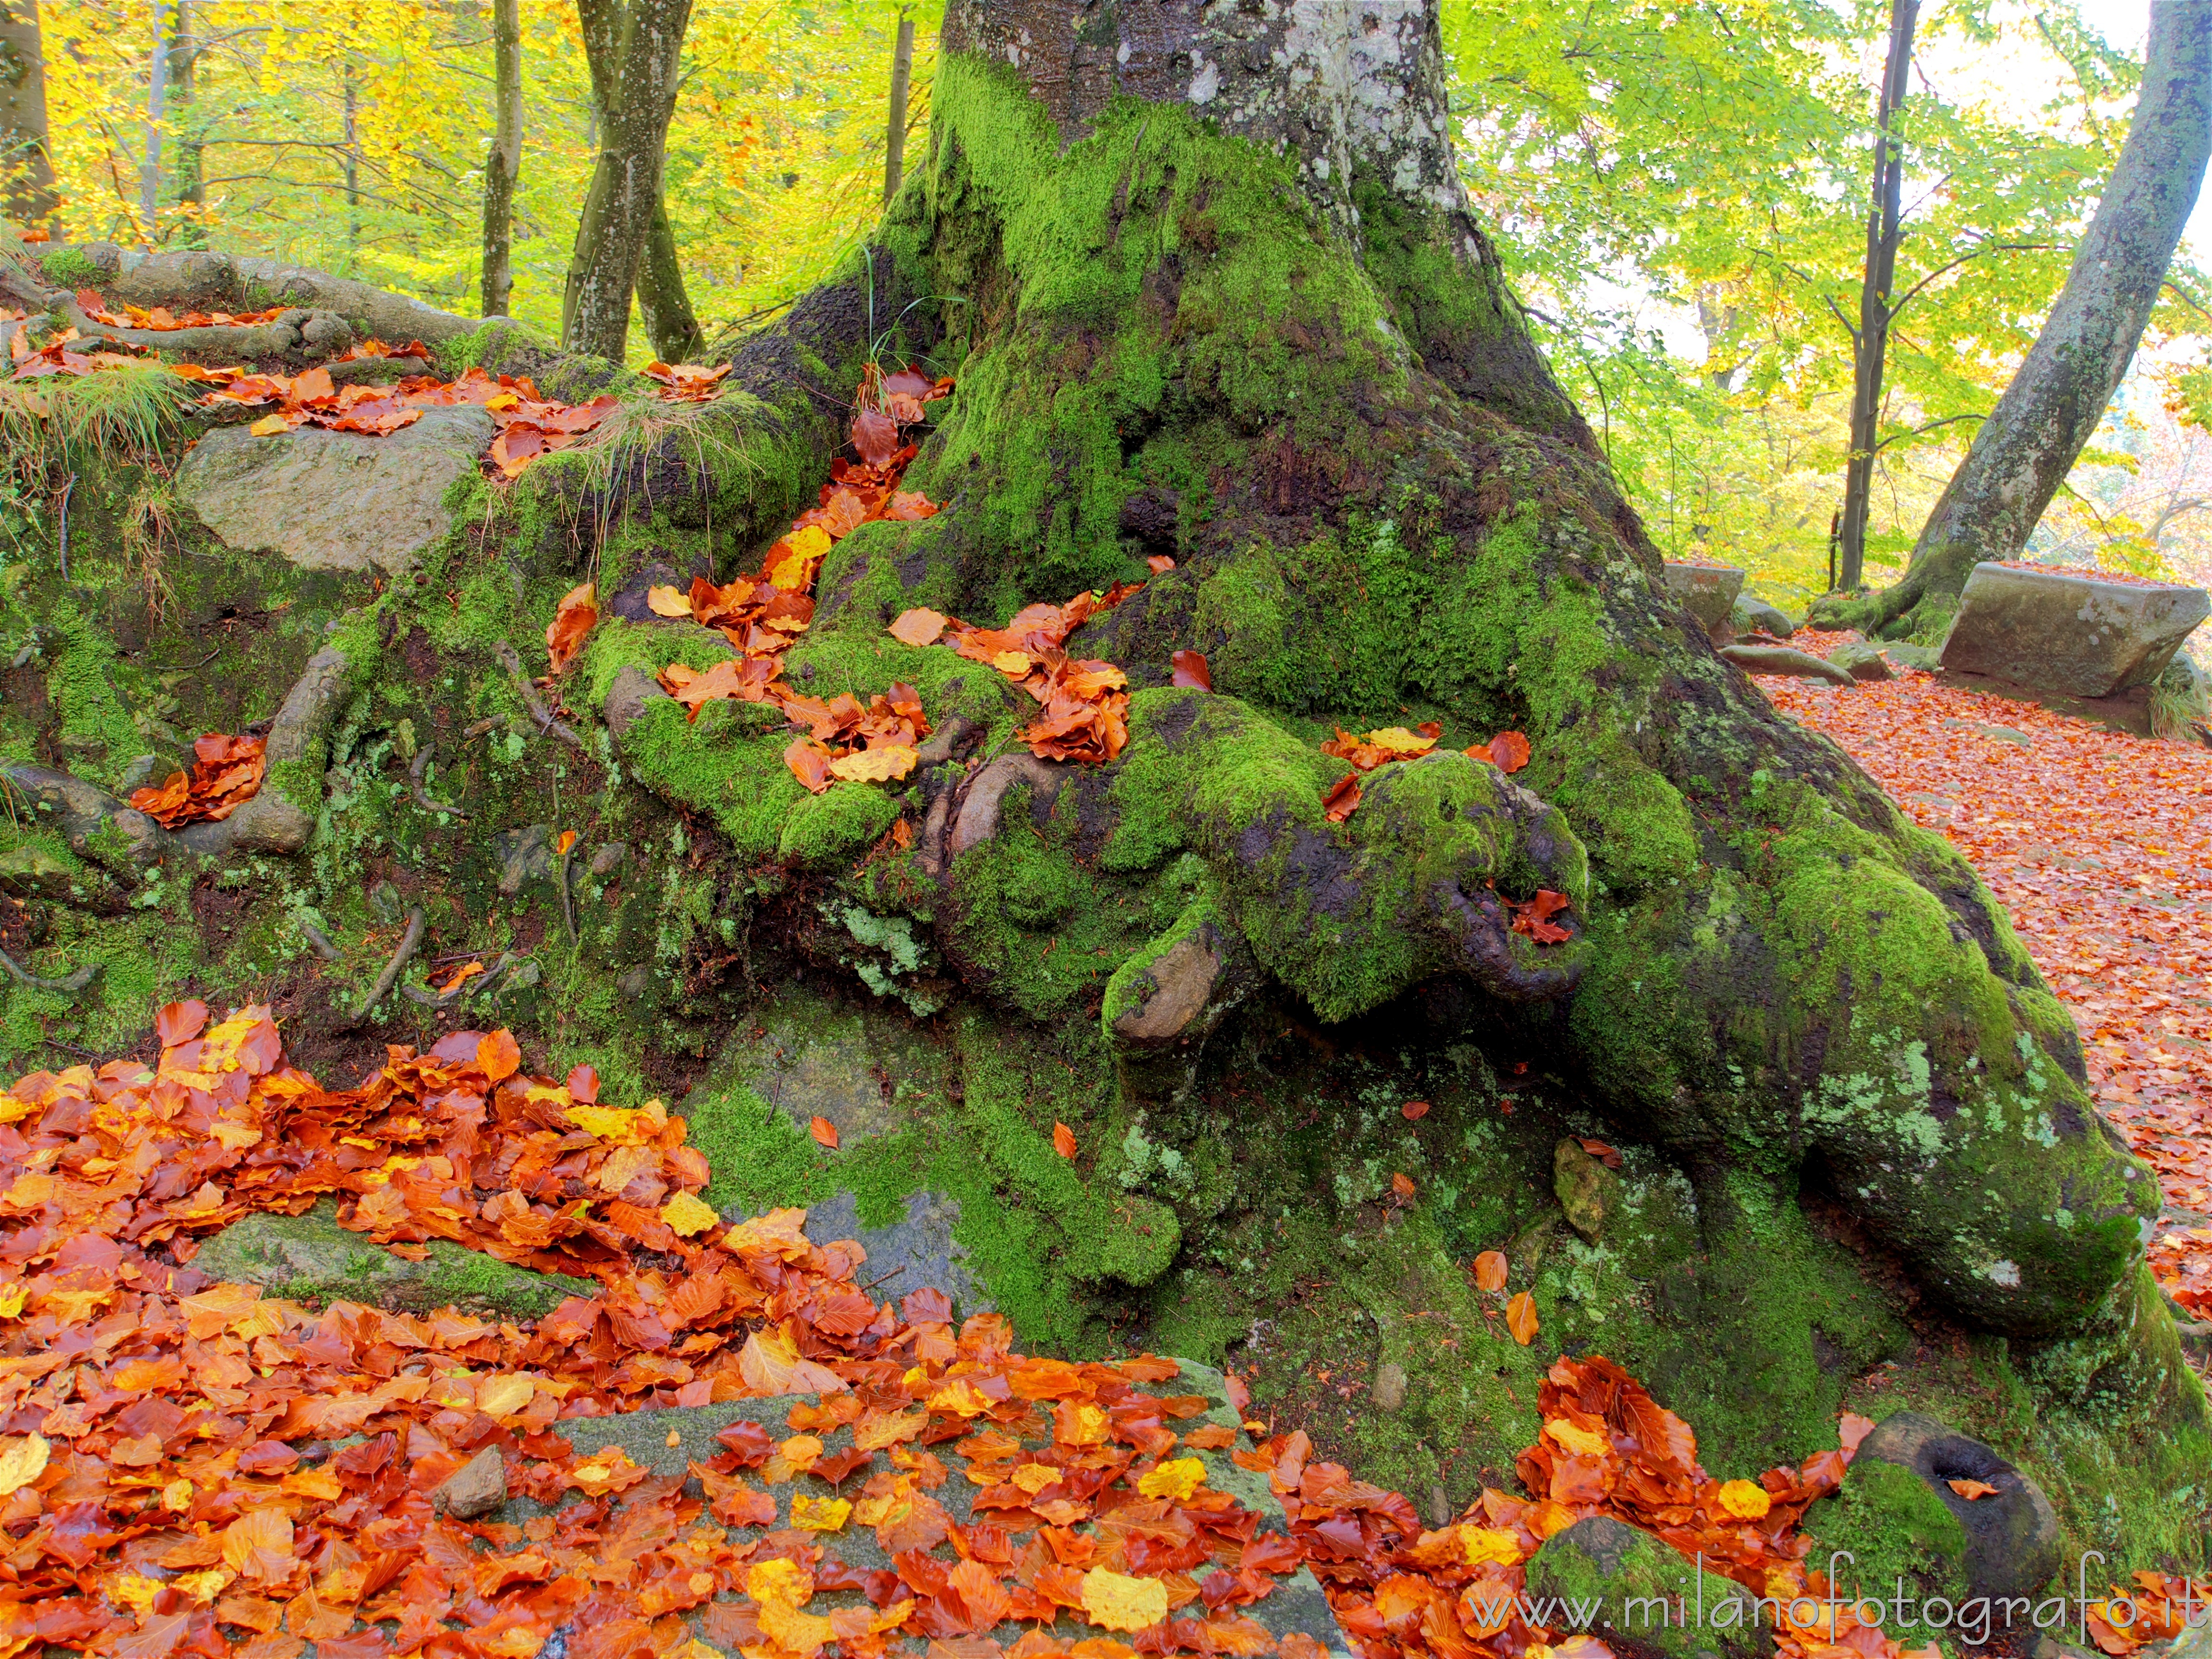 Biella: Base di un tronco coperto di muschio in autunno nei boschi intorno al Santuario di Oropa - Biella